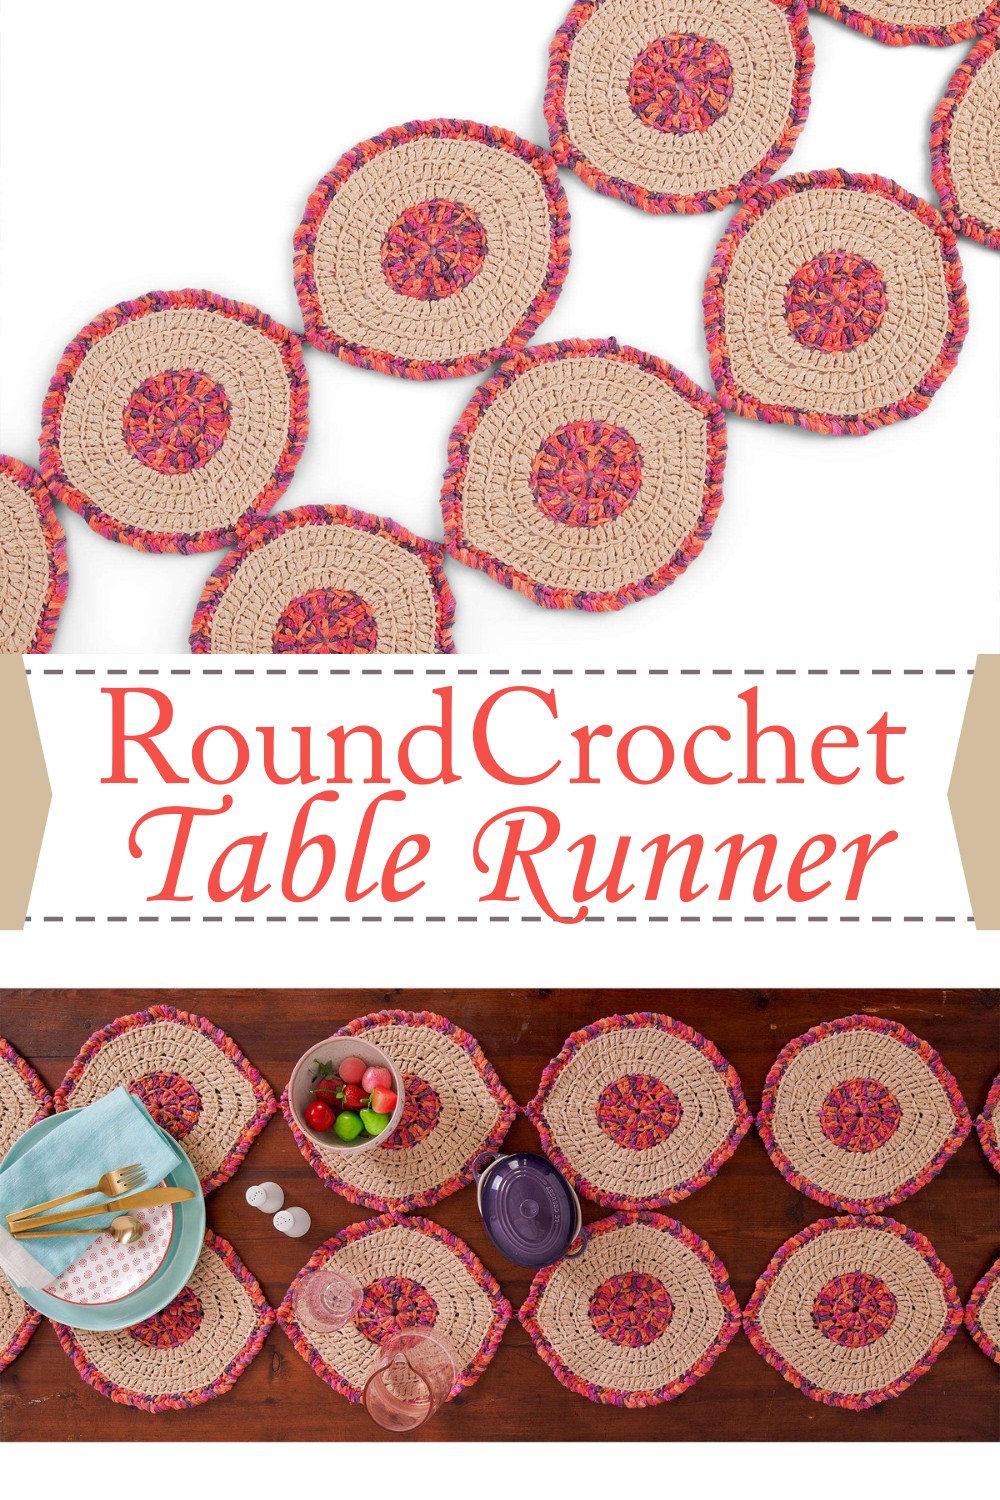 Round Crochet Table Runner Pattern